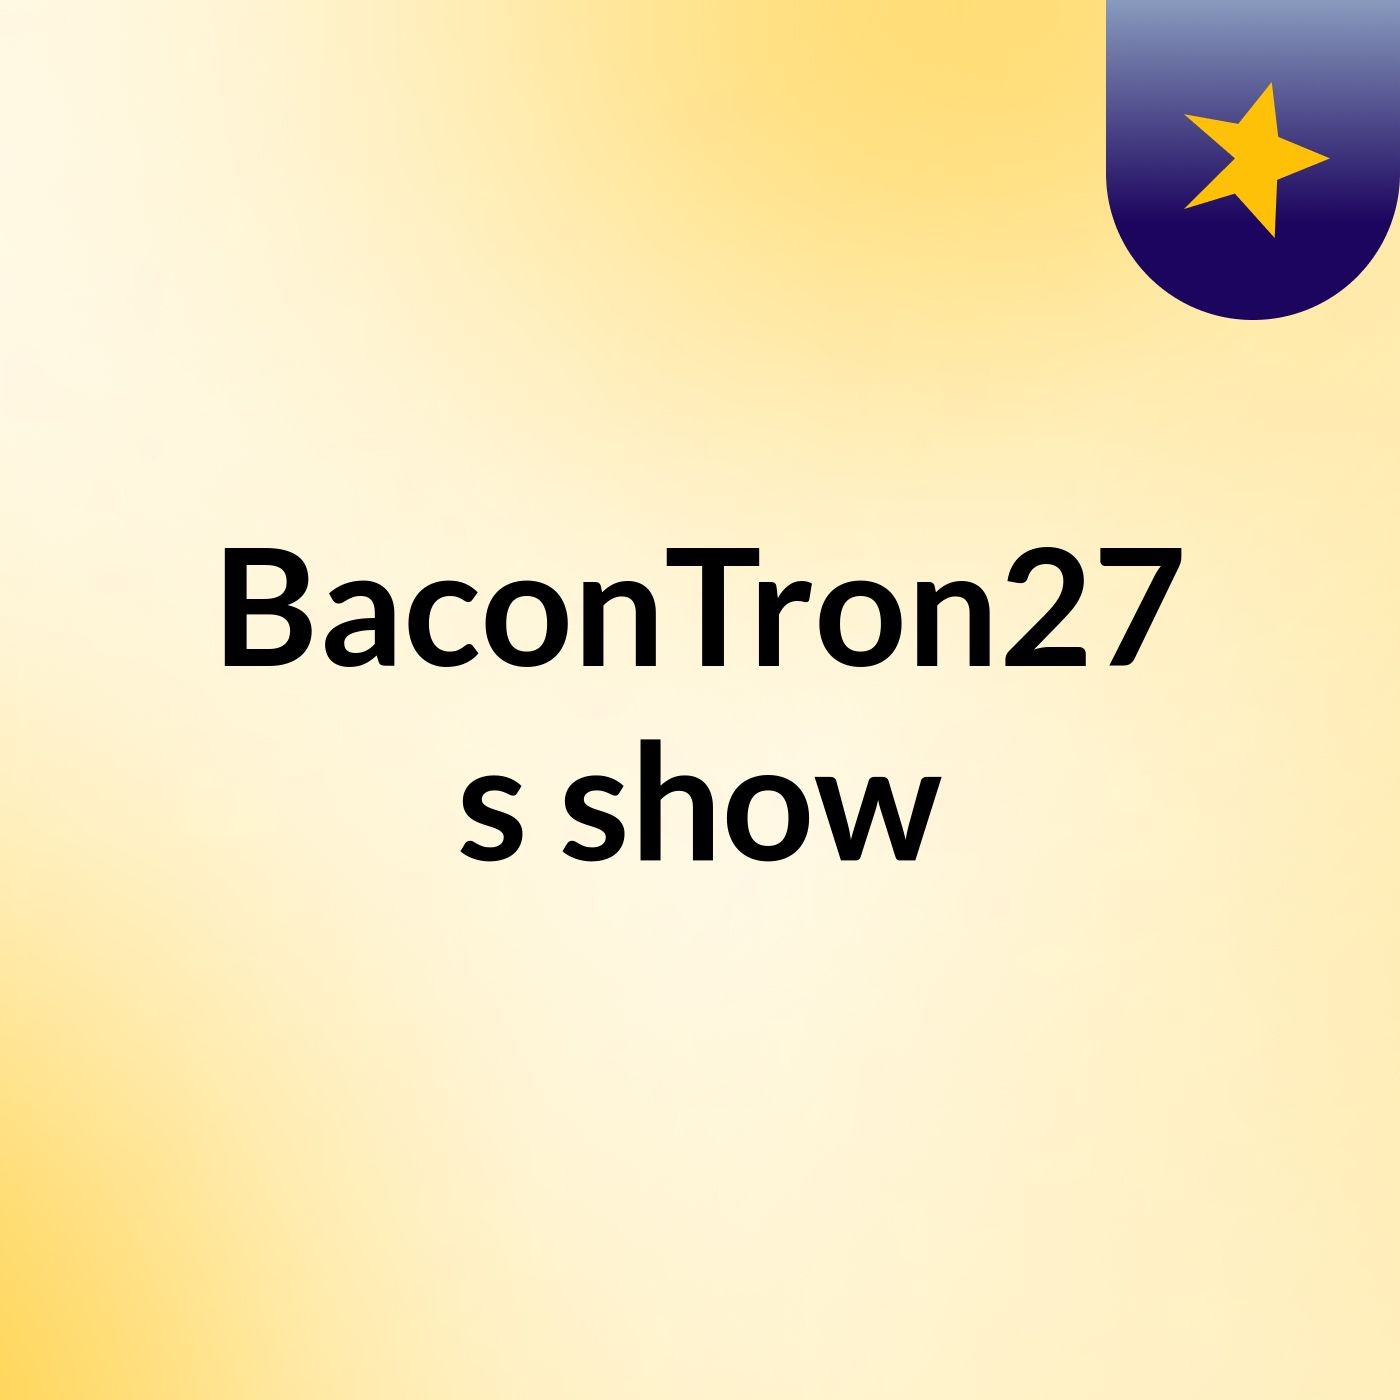 BaconTron27's show